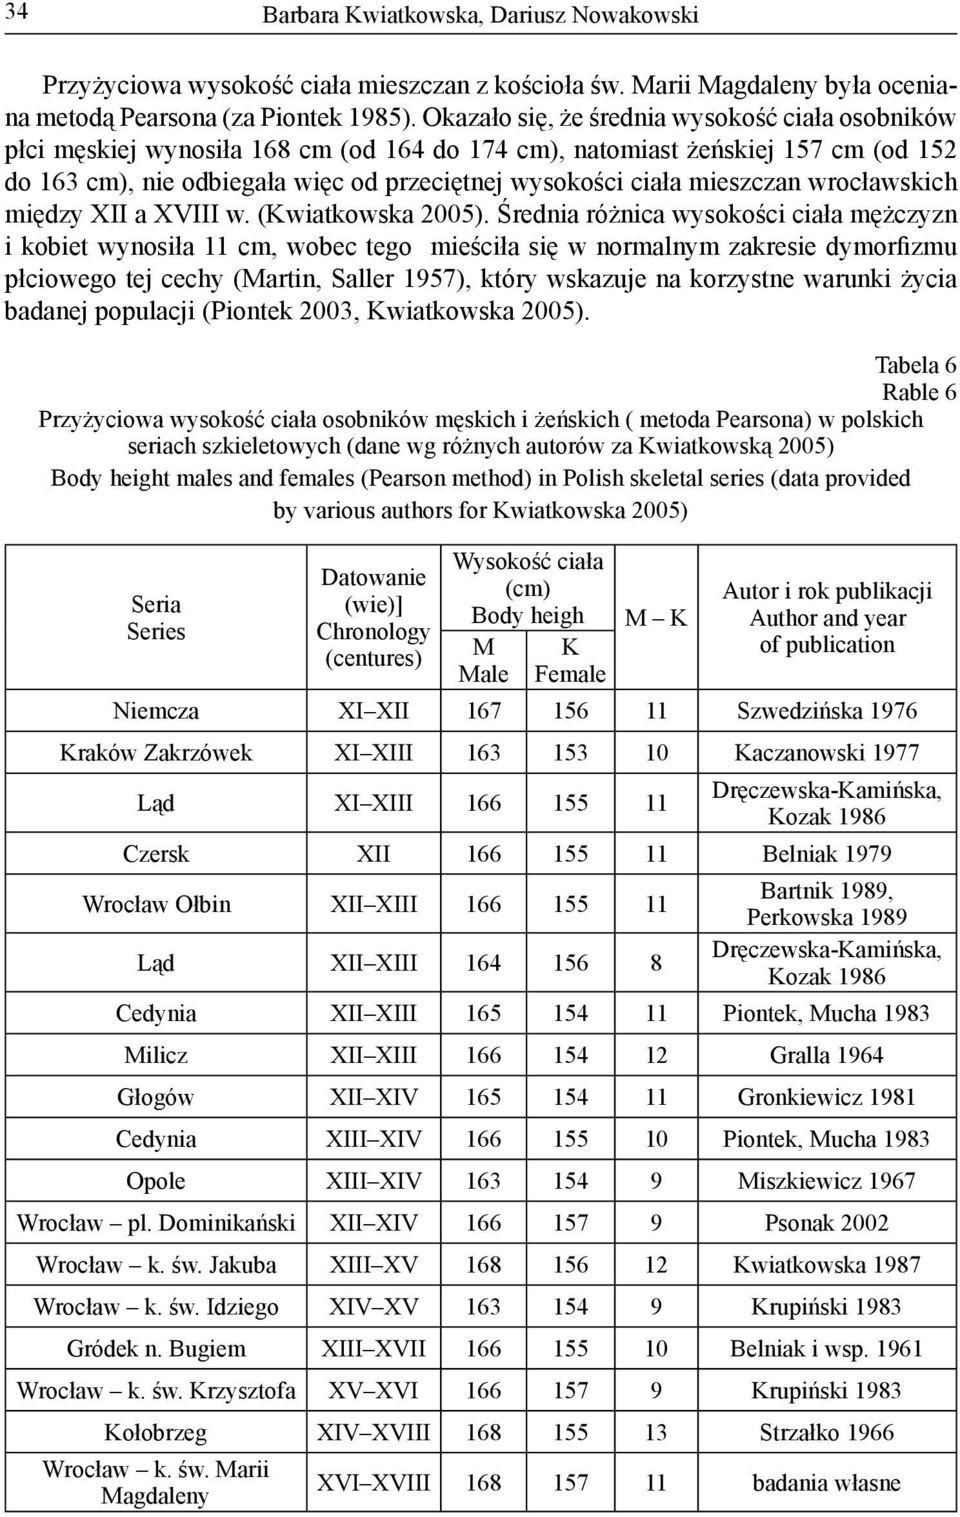 mieszczan wrocławskich między XII a XVIII w. (Kwiatkowska 2005).